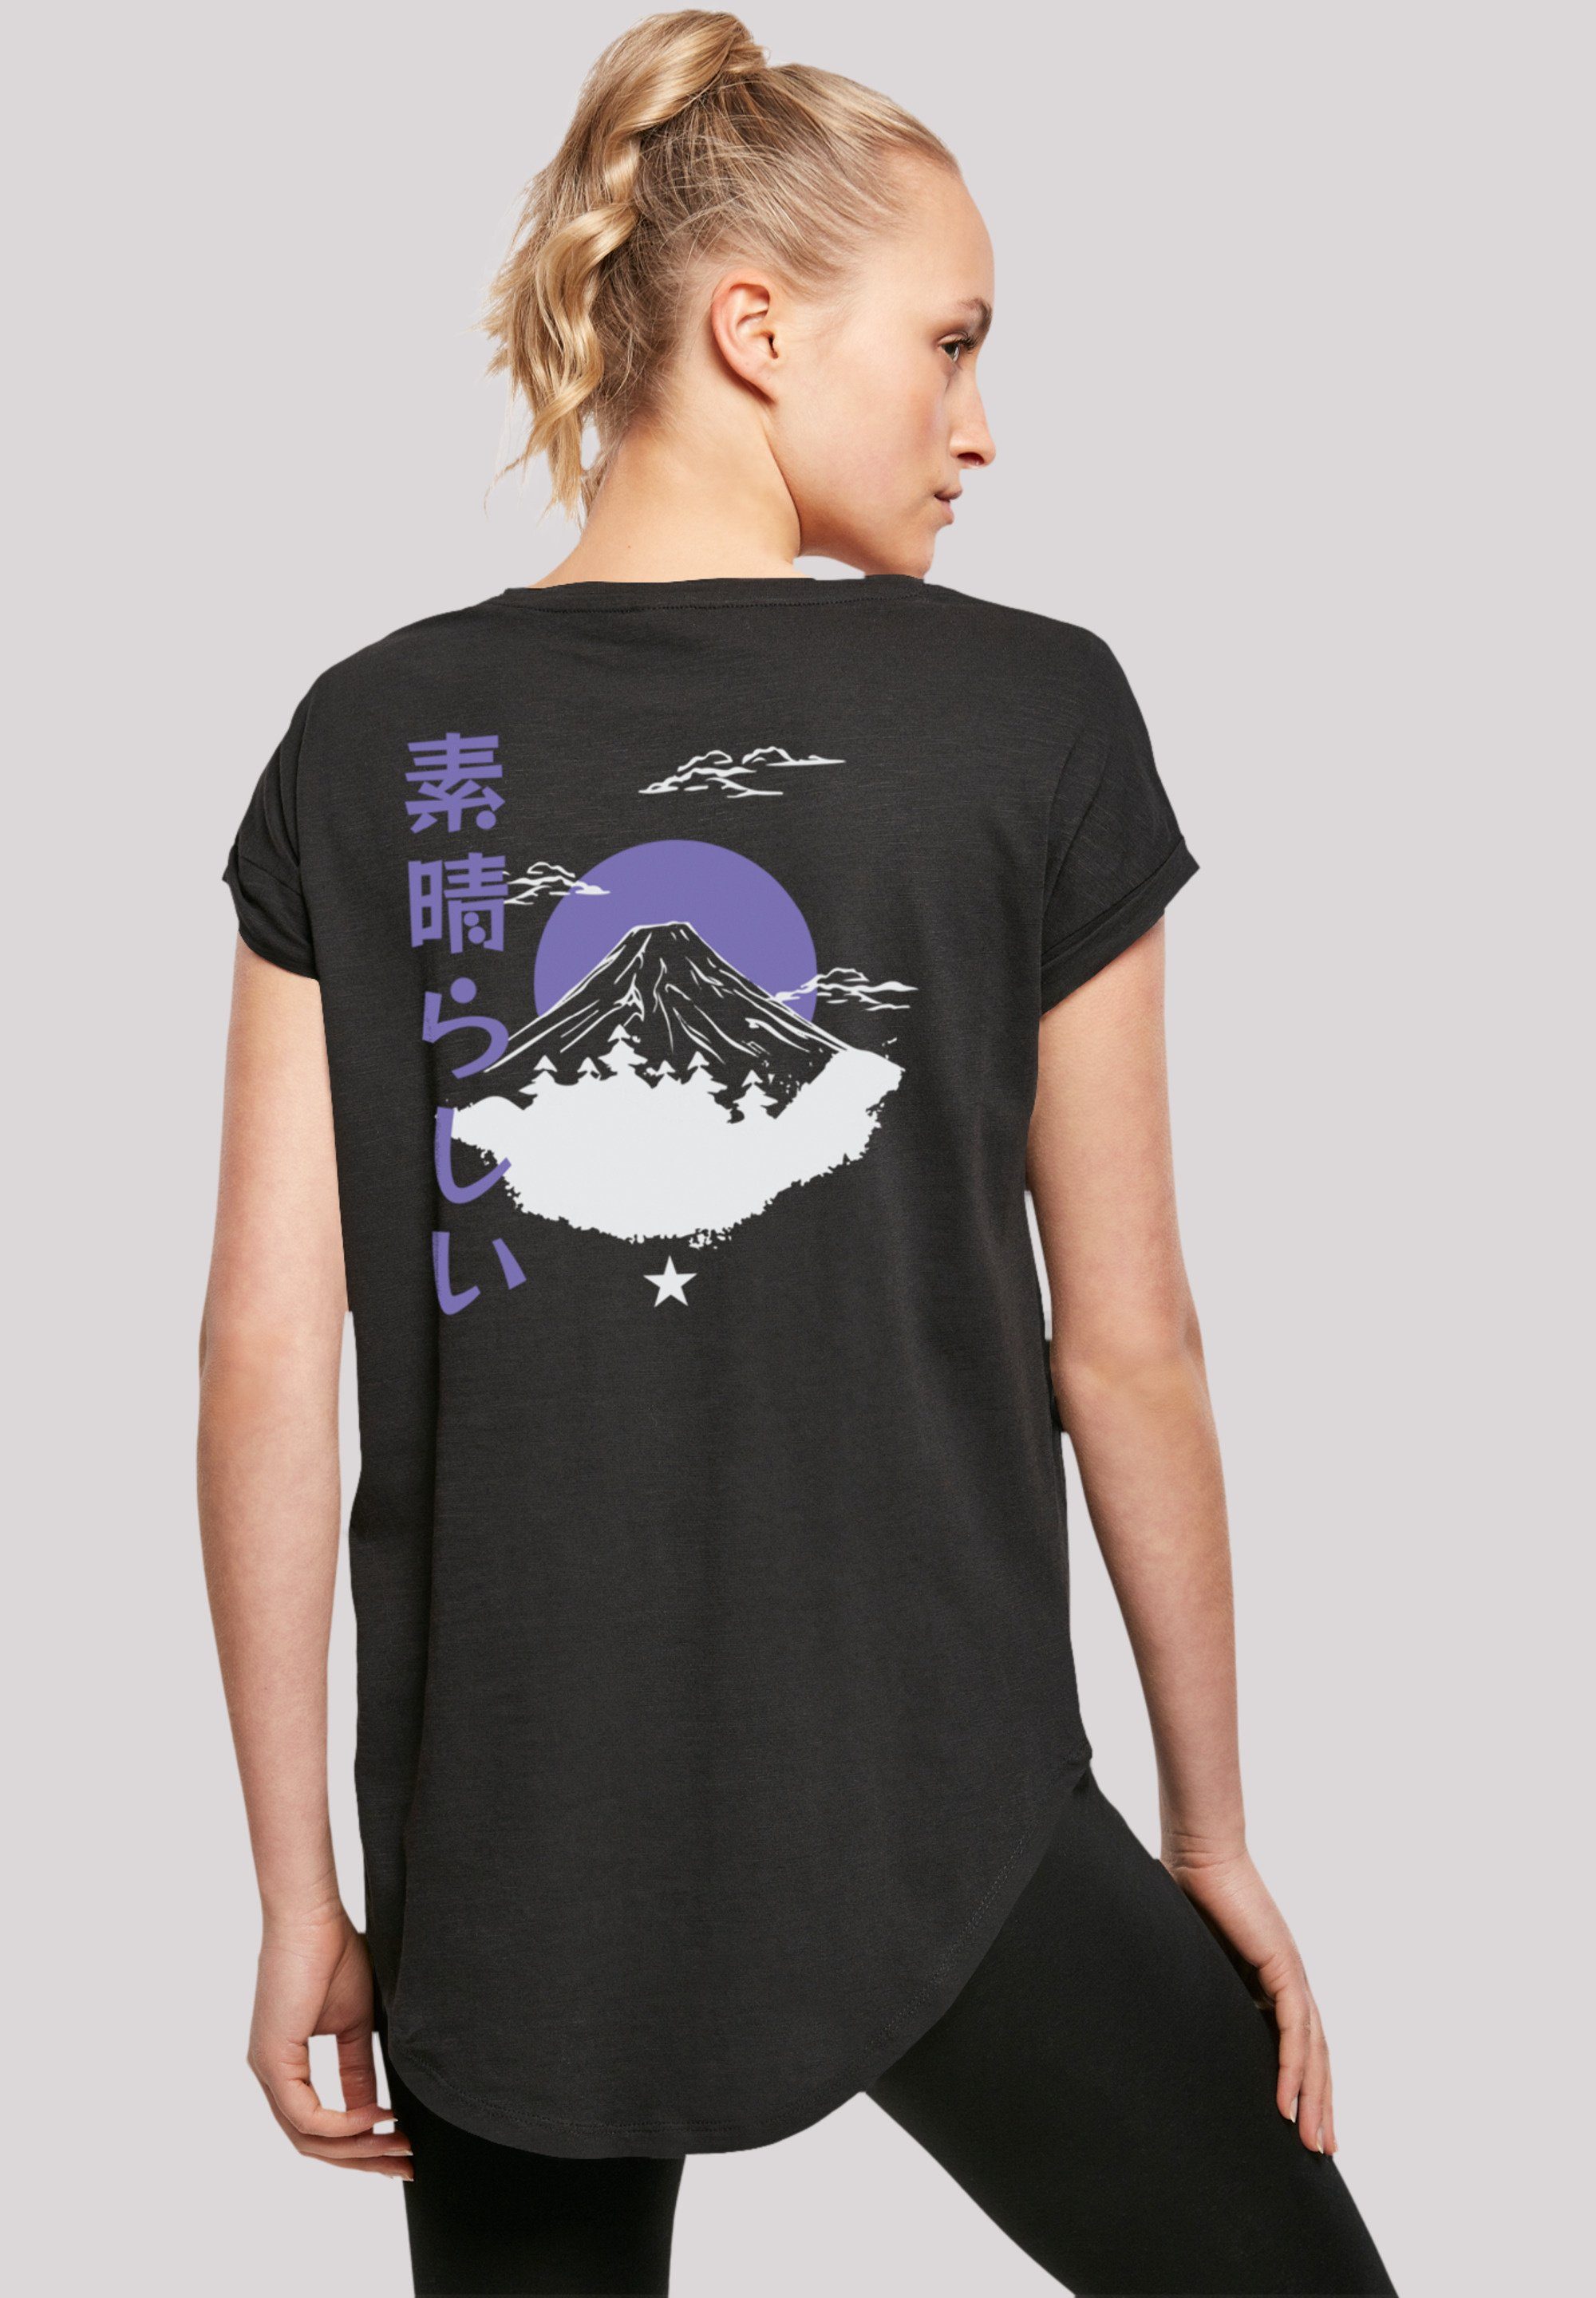 F4NT4STIC T-Shirt Mount weicher Tragekomfort Sehr Print, Fuji mit Baumwollstoff hohem